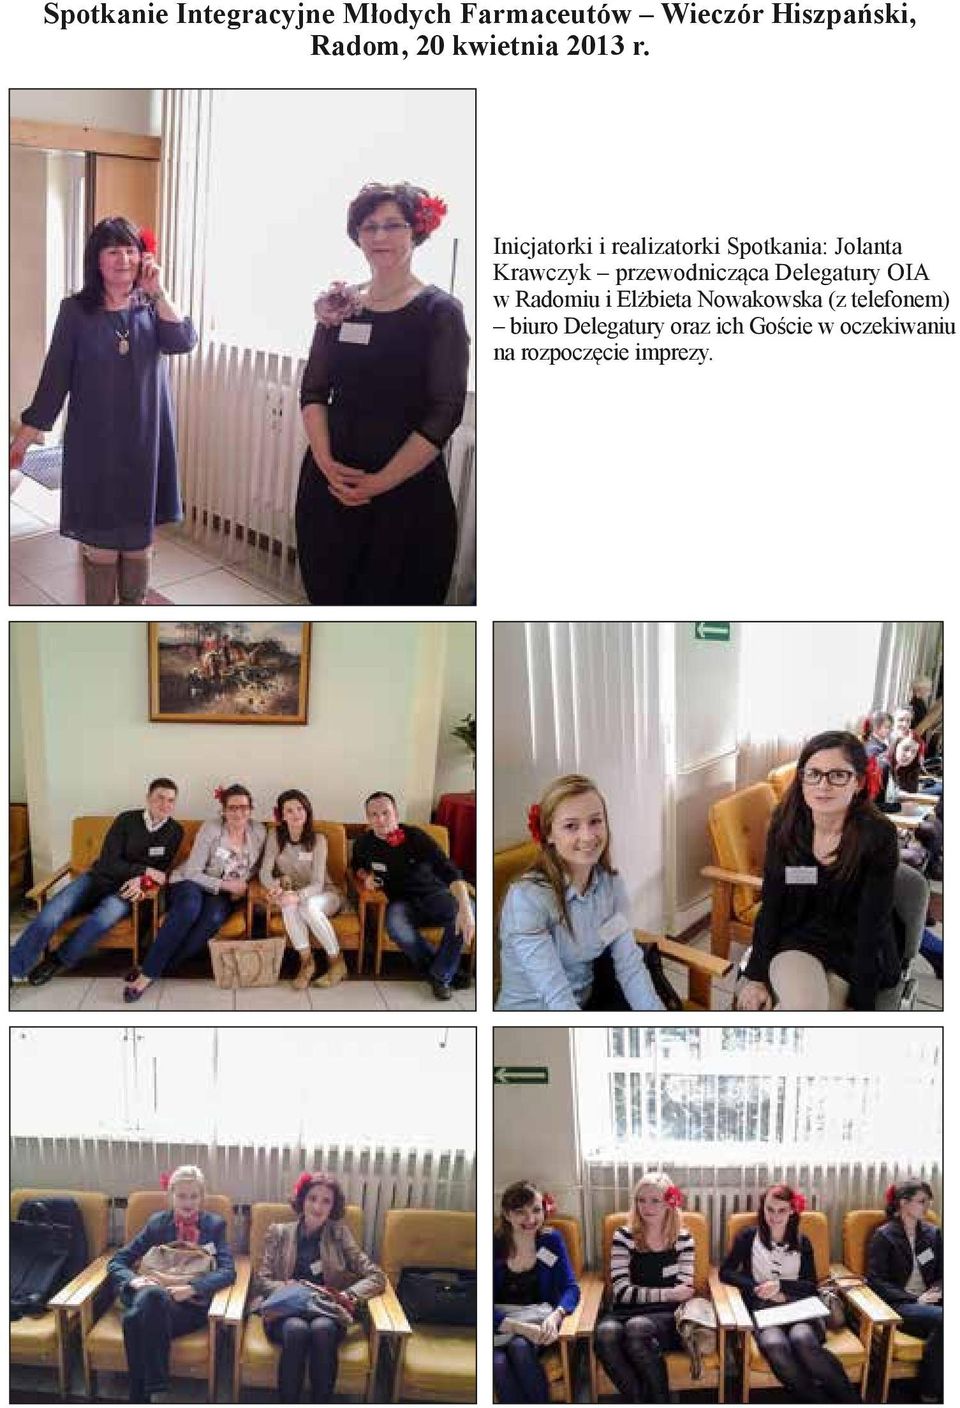 Inicjatorki i realizatorki Spotkania: Jolanta Krawczyk przewodnicząca